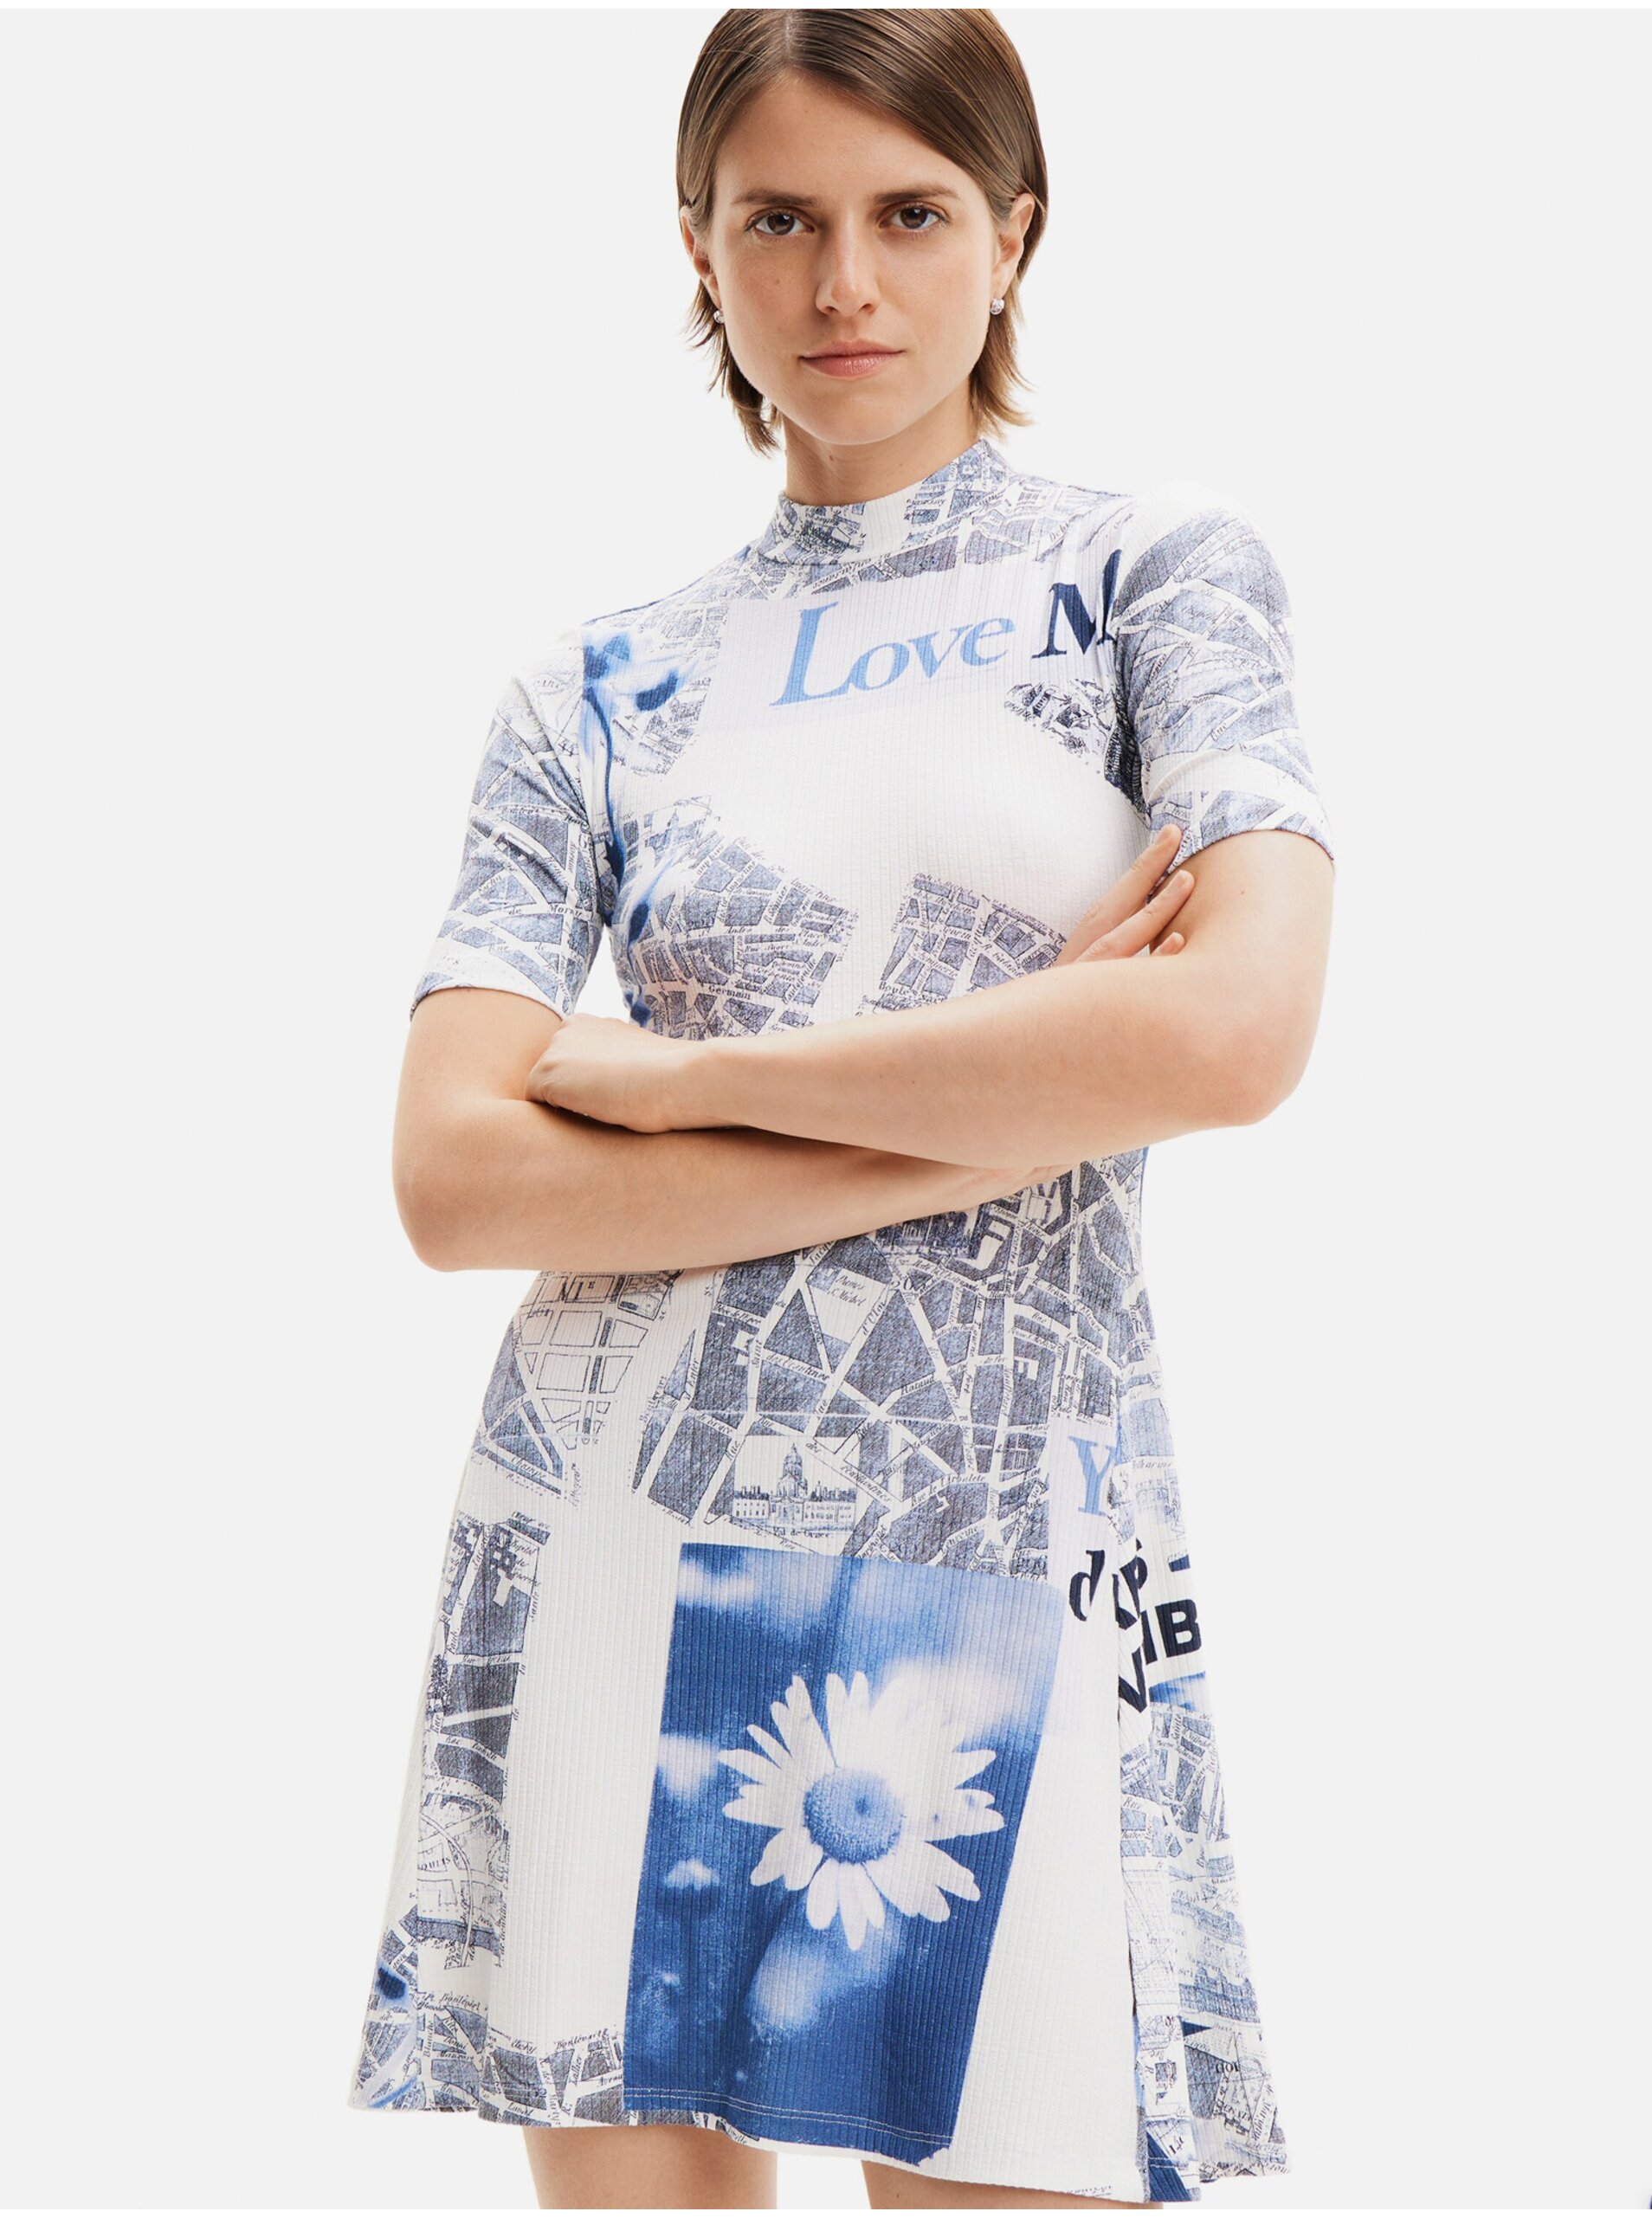 E-shop Modro-biele dámske vzorované šaty Desigual Clavelitos